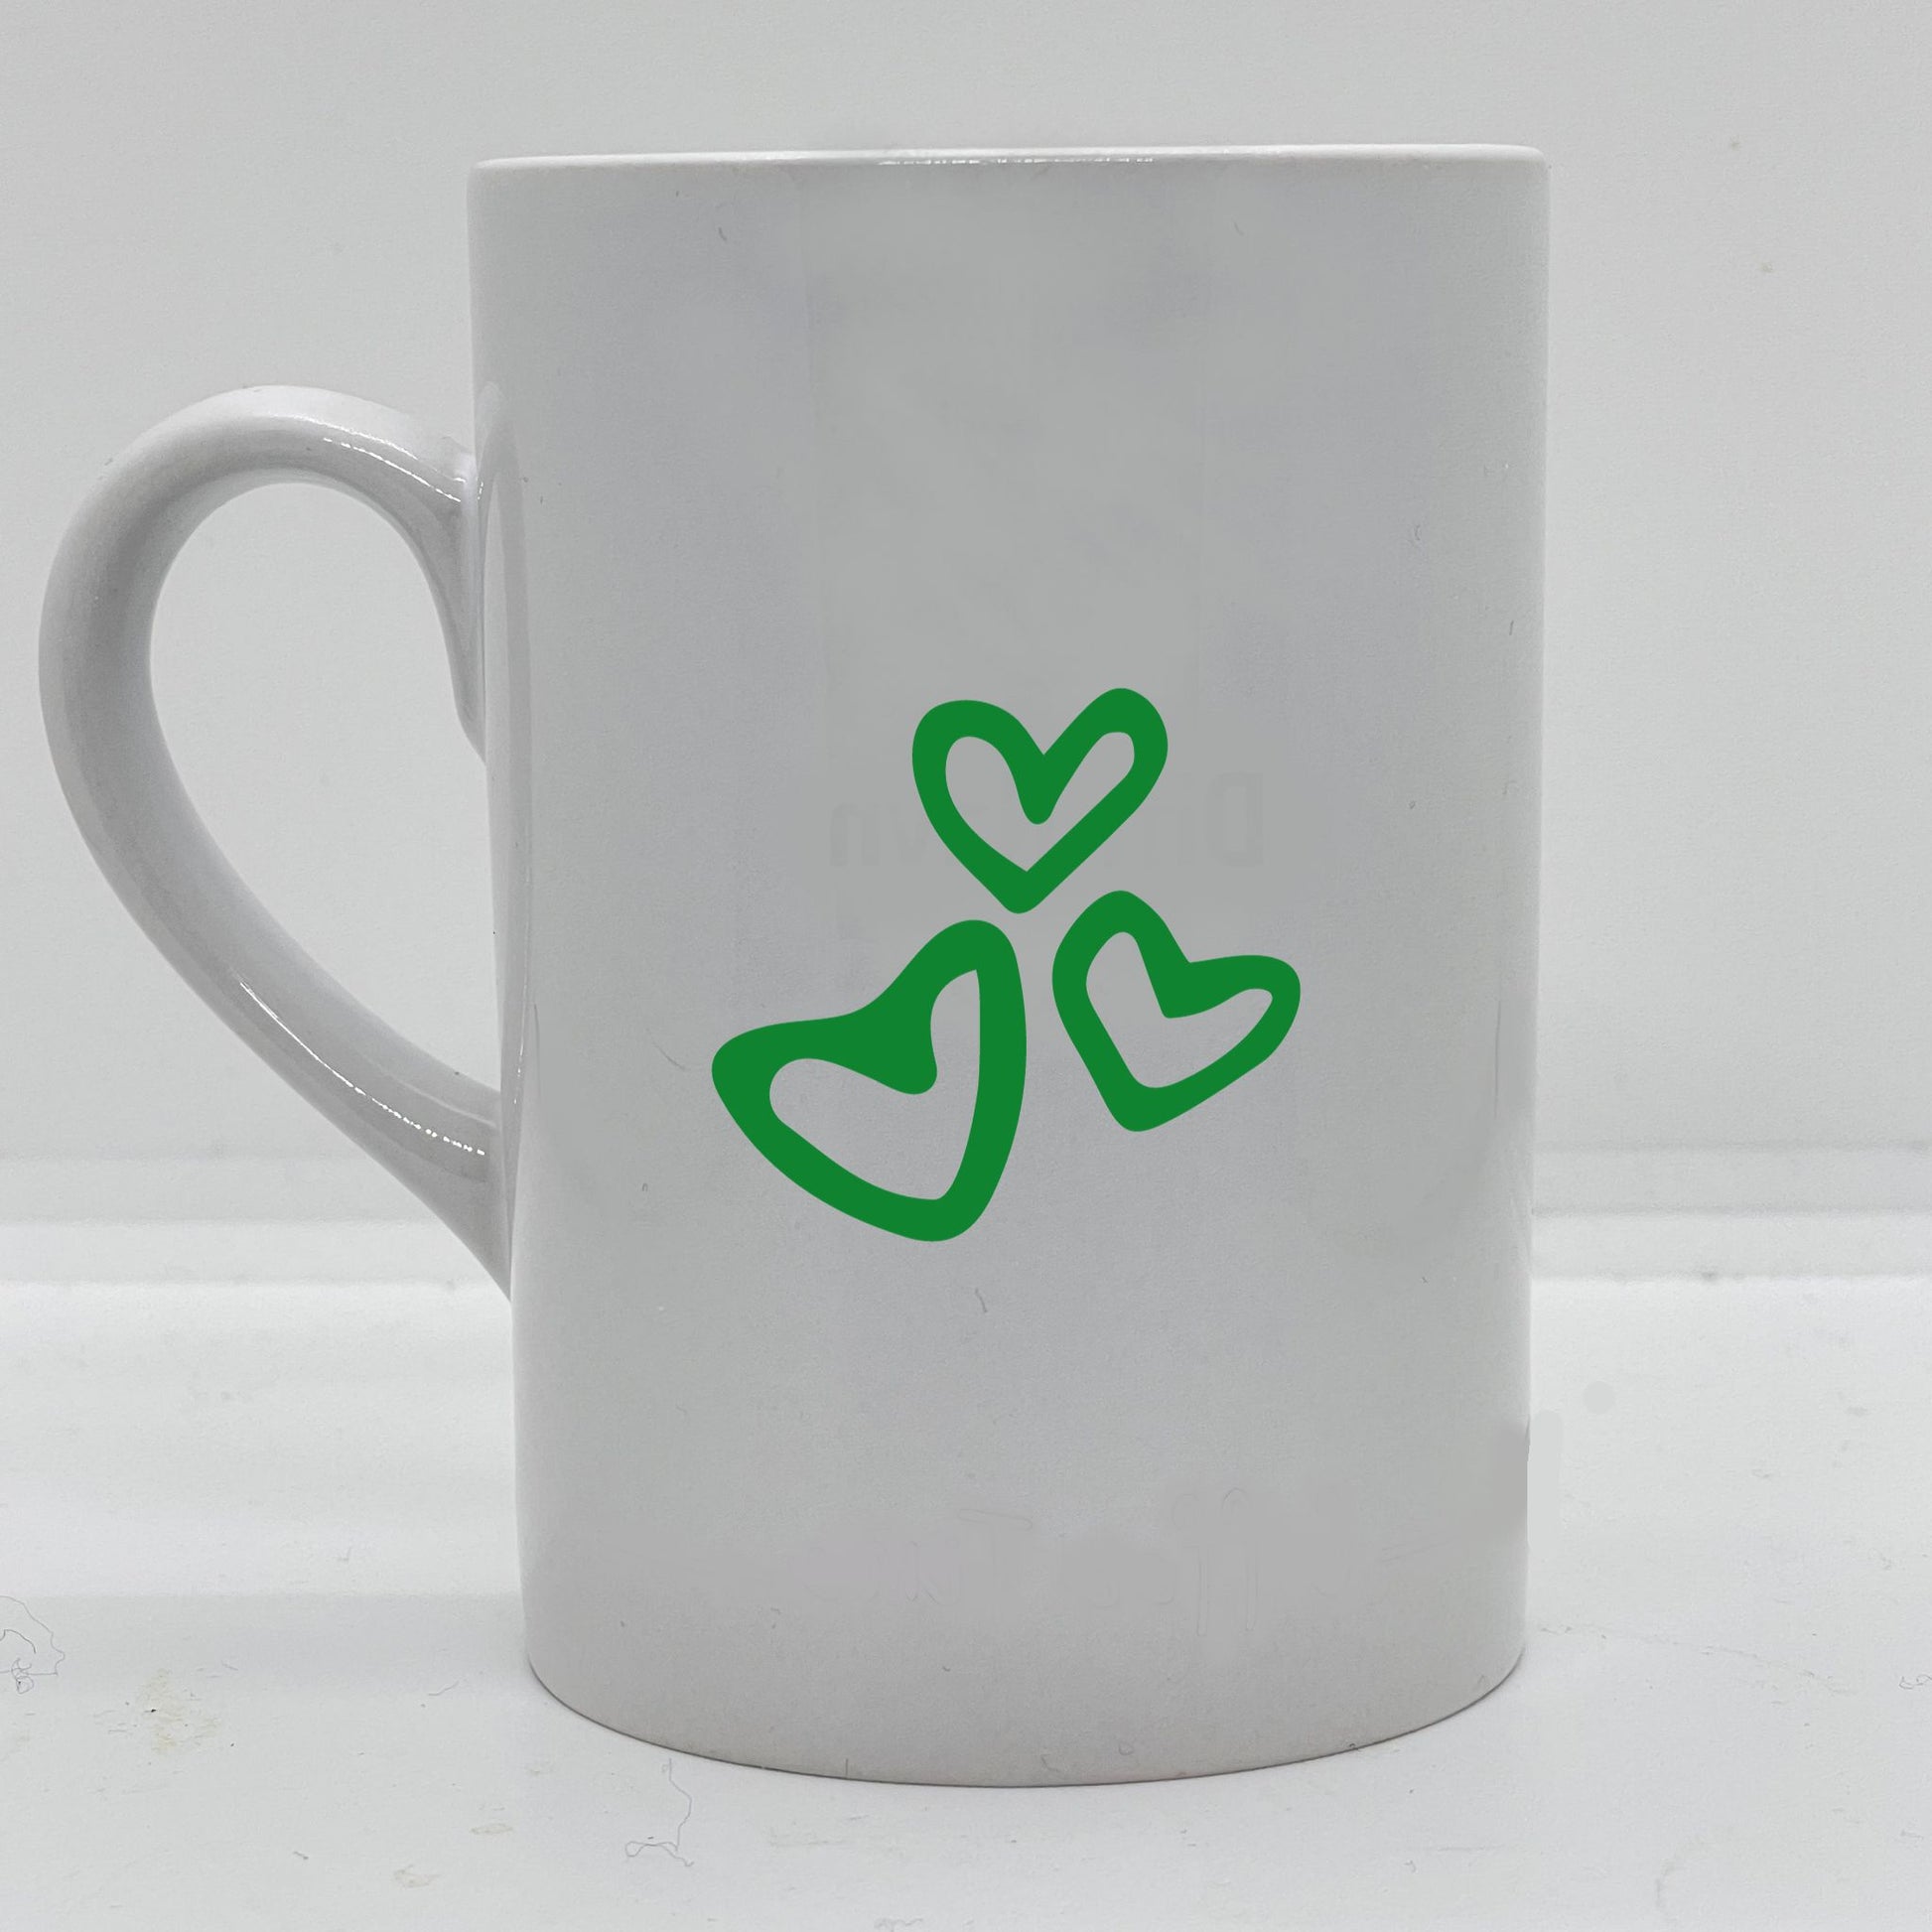 Krus i hvit keramikk med påskrift "Best son ever" på en side, og tre hjerter på motsatt side. Trykk i grønt og sort.